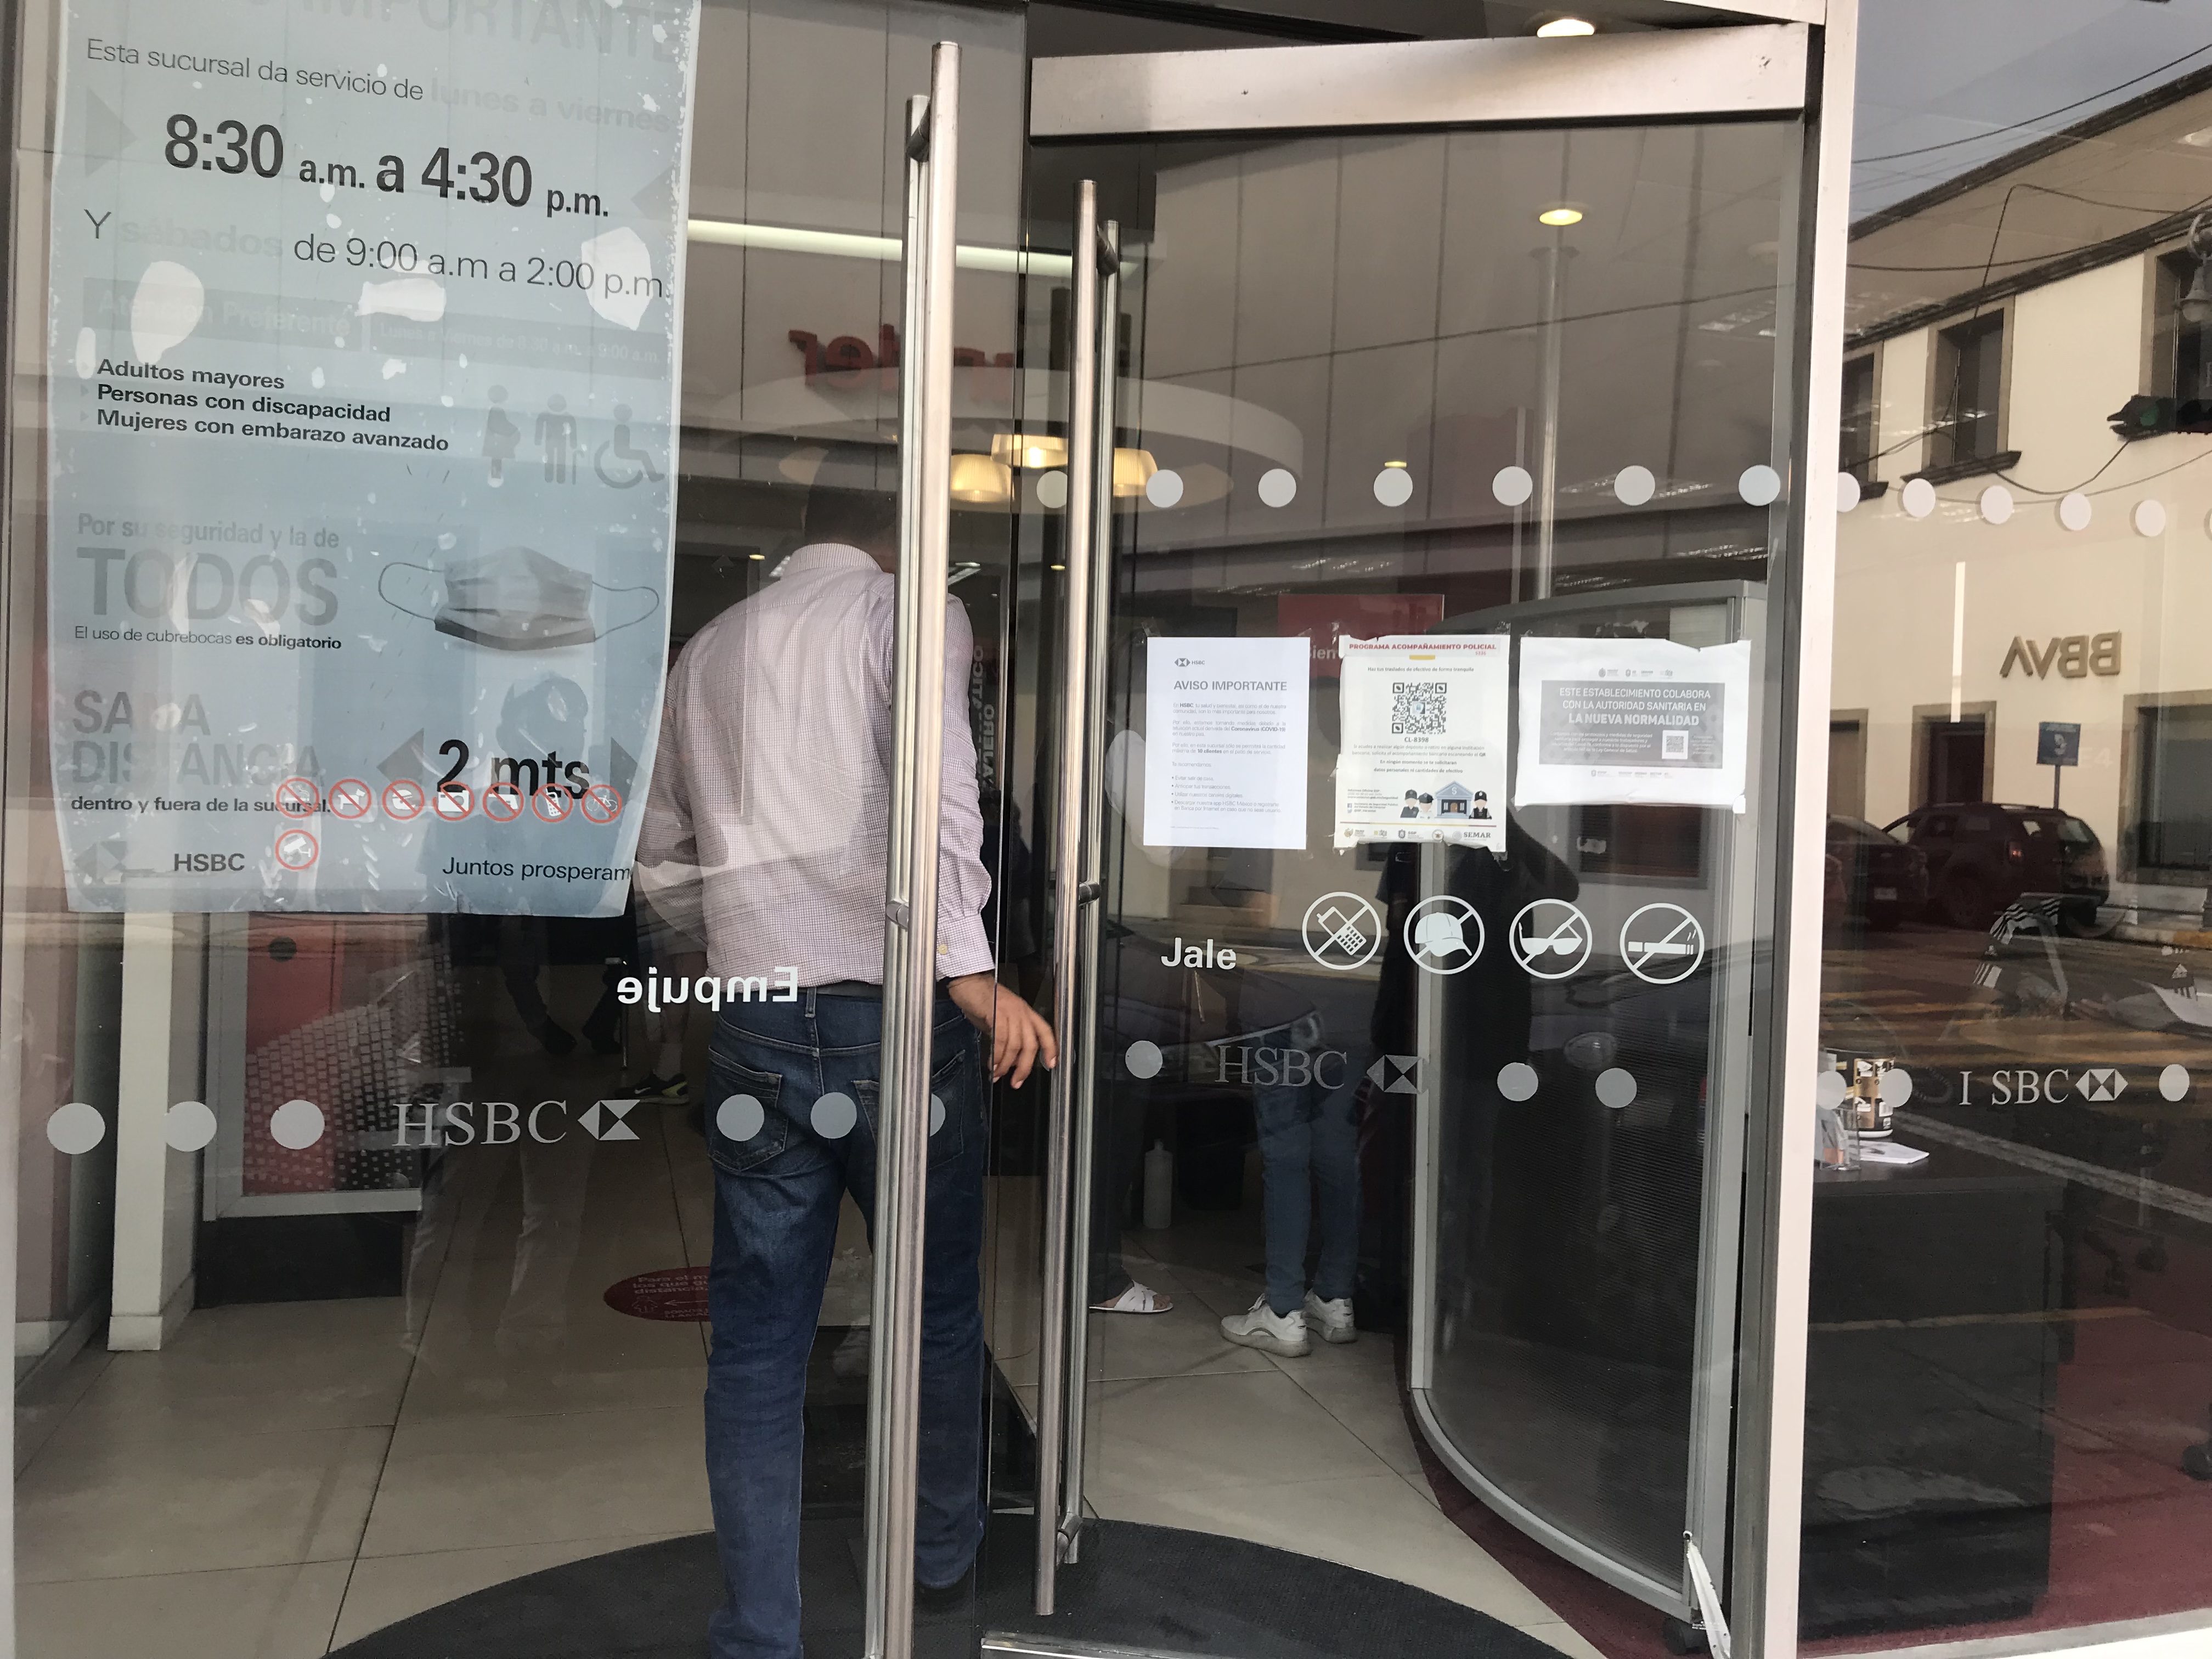 Falso que bancos cierren por contagios de Covid19 en Veracruz | MEGANOTICIAS